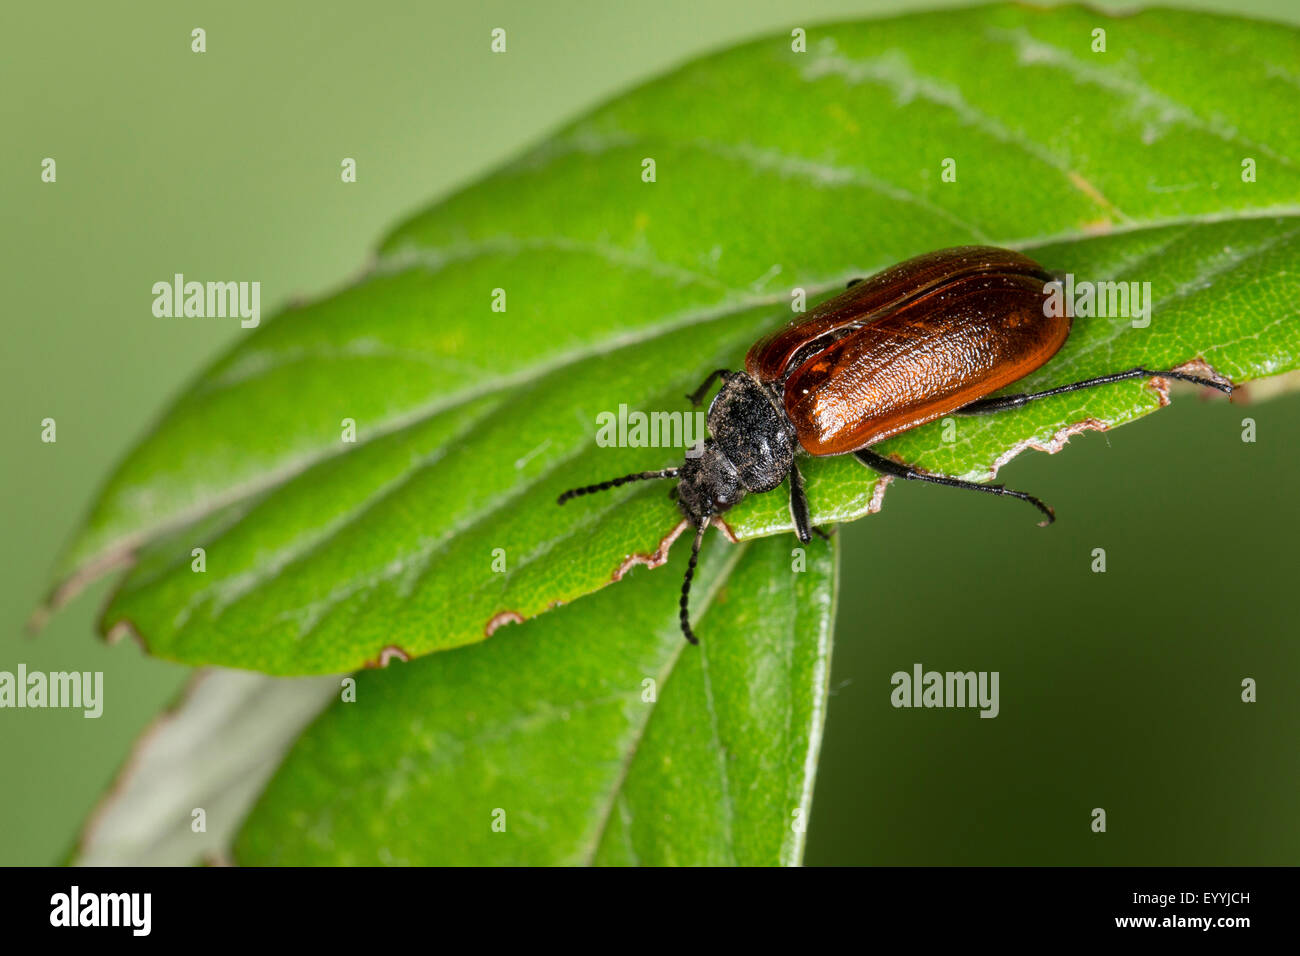 Kamm-krallte Käfer, Kamm krallenbewehrten Käfer (Omophlus spec, Odontomophlus spec.), sitzt auf einem Blatt, Deutschland Stockfoto